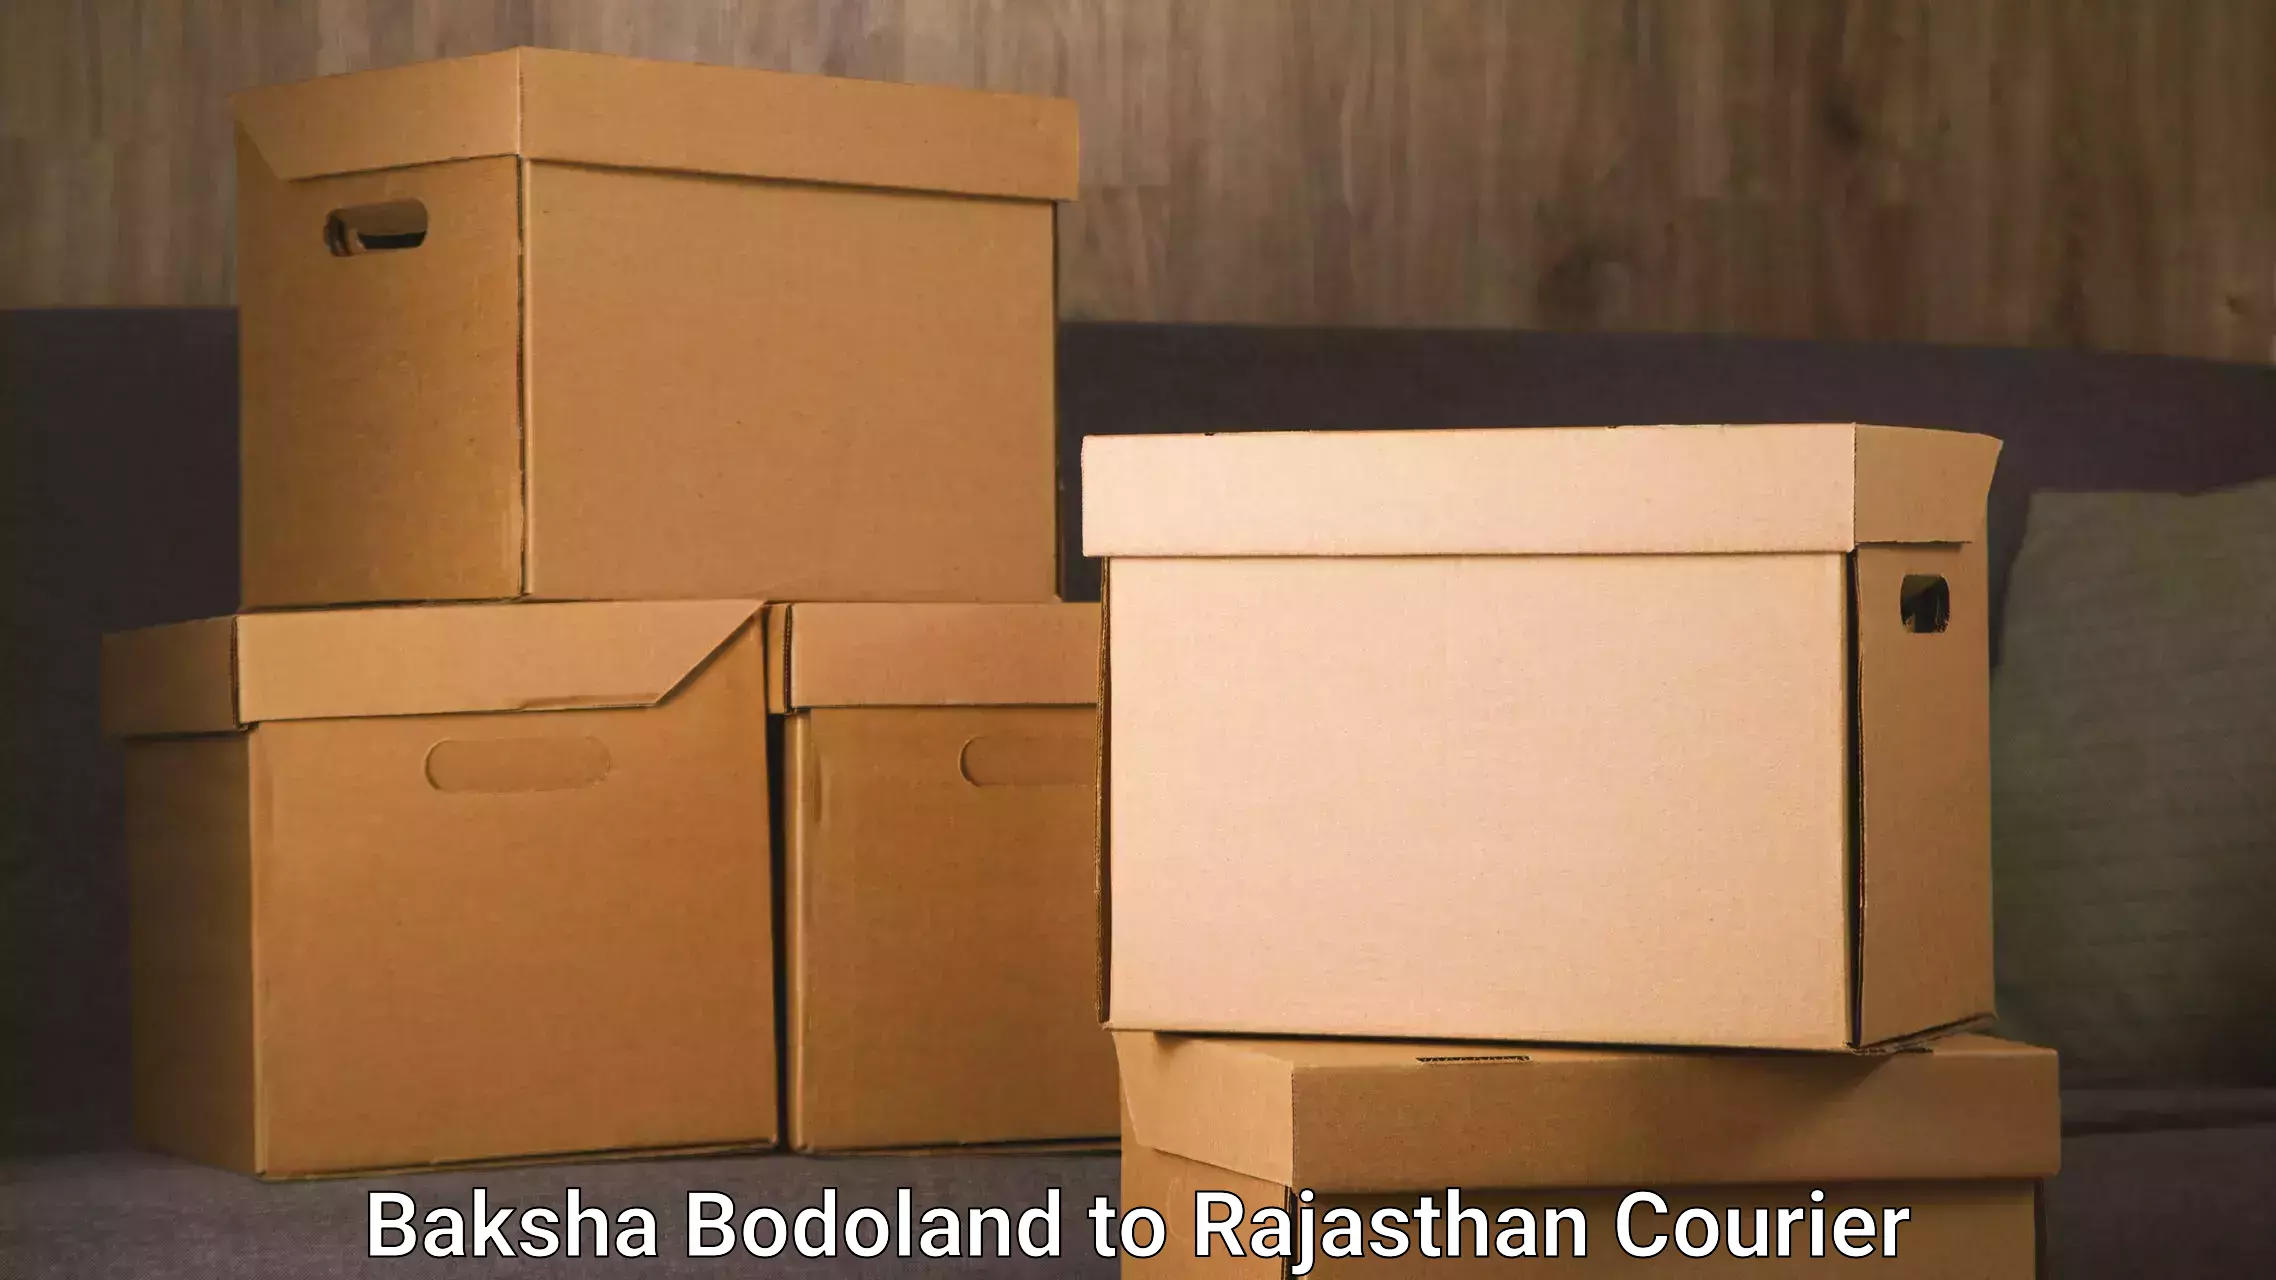 Courier service comparison Baksha Bodoland to Tonk